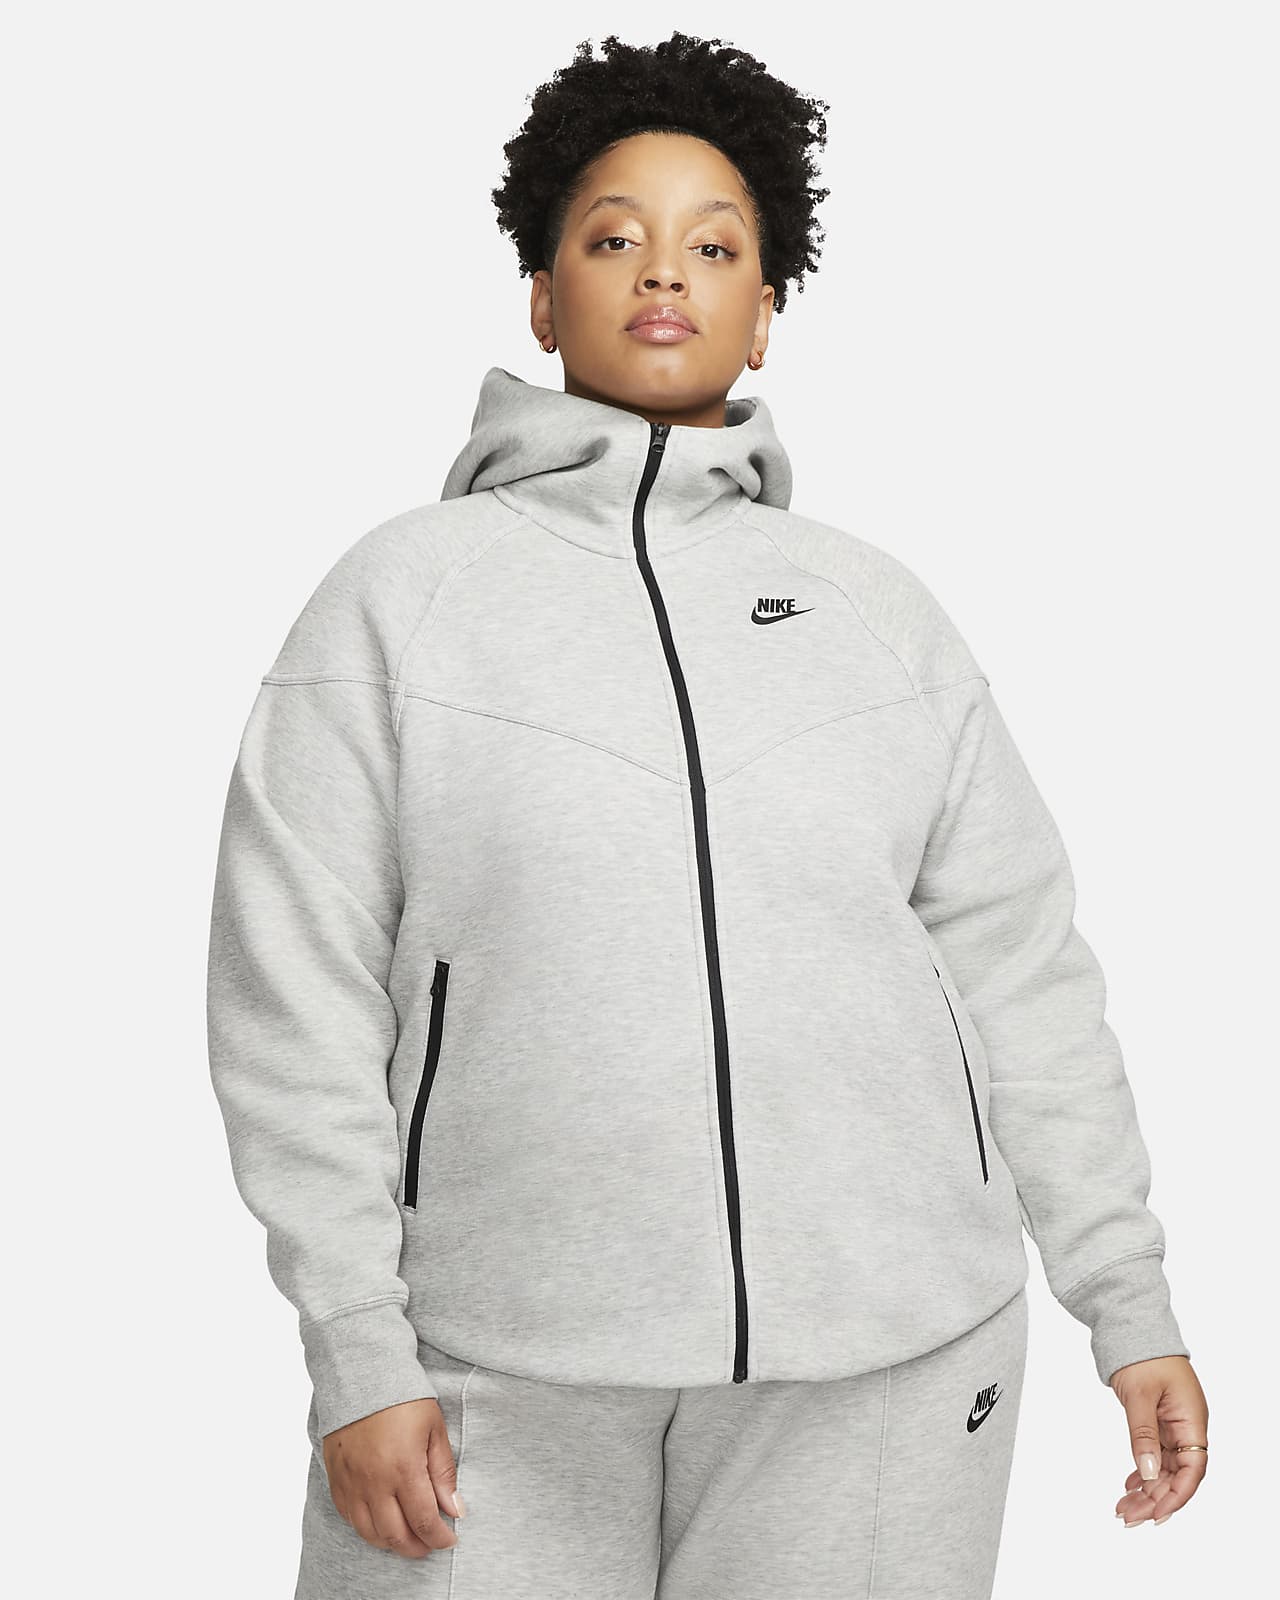 Nike Sportswear Essential Women's Fleece Crew. Nike CA